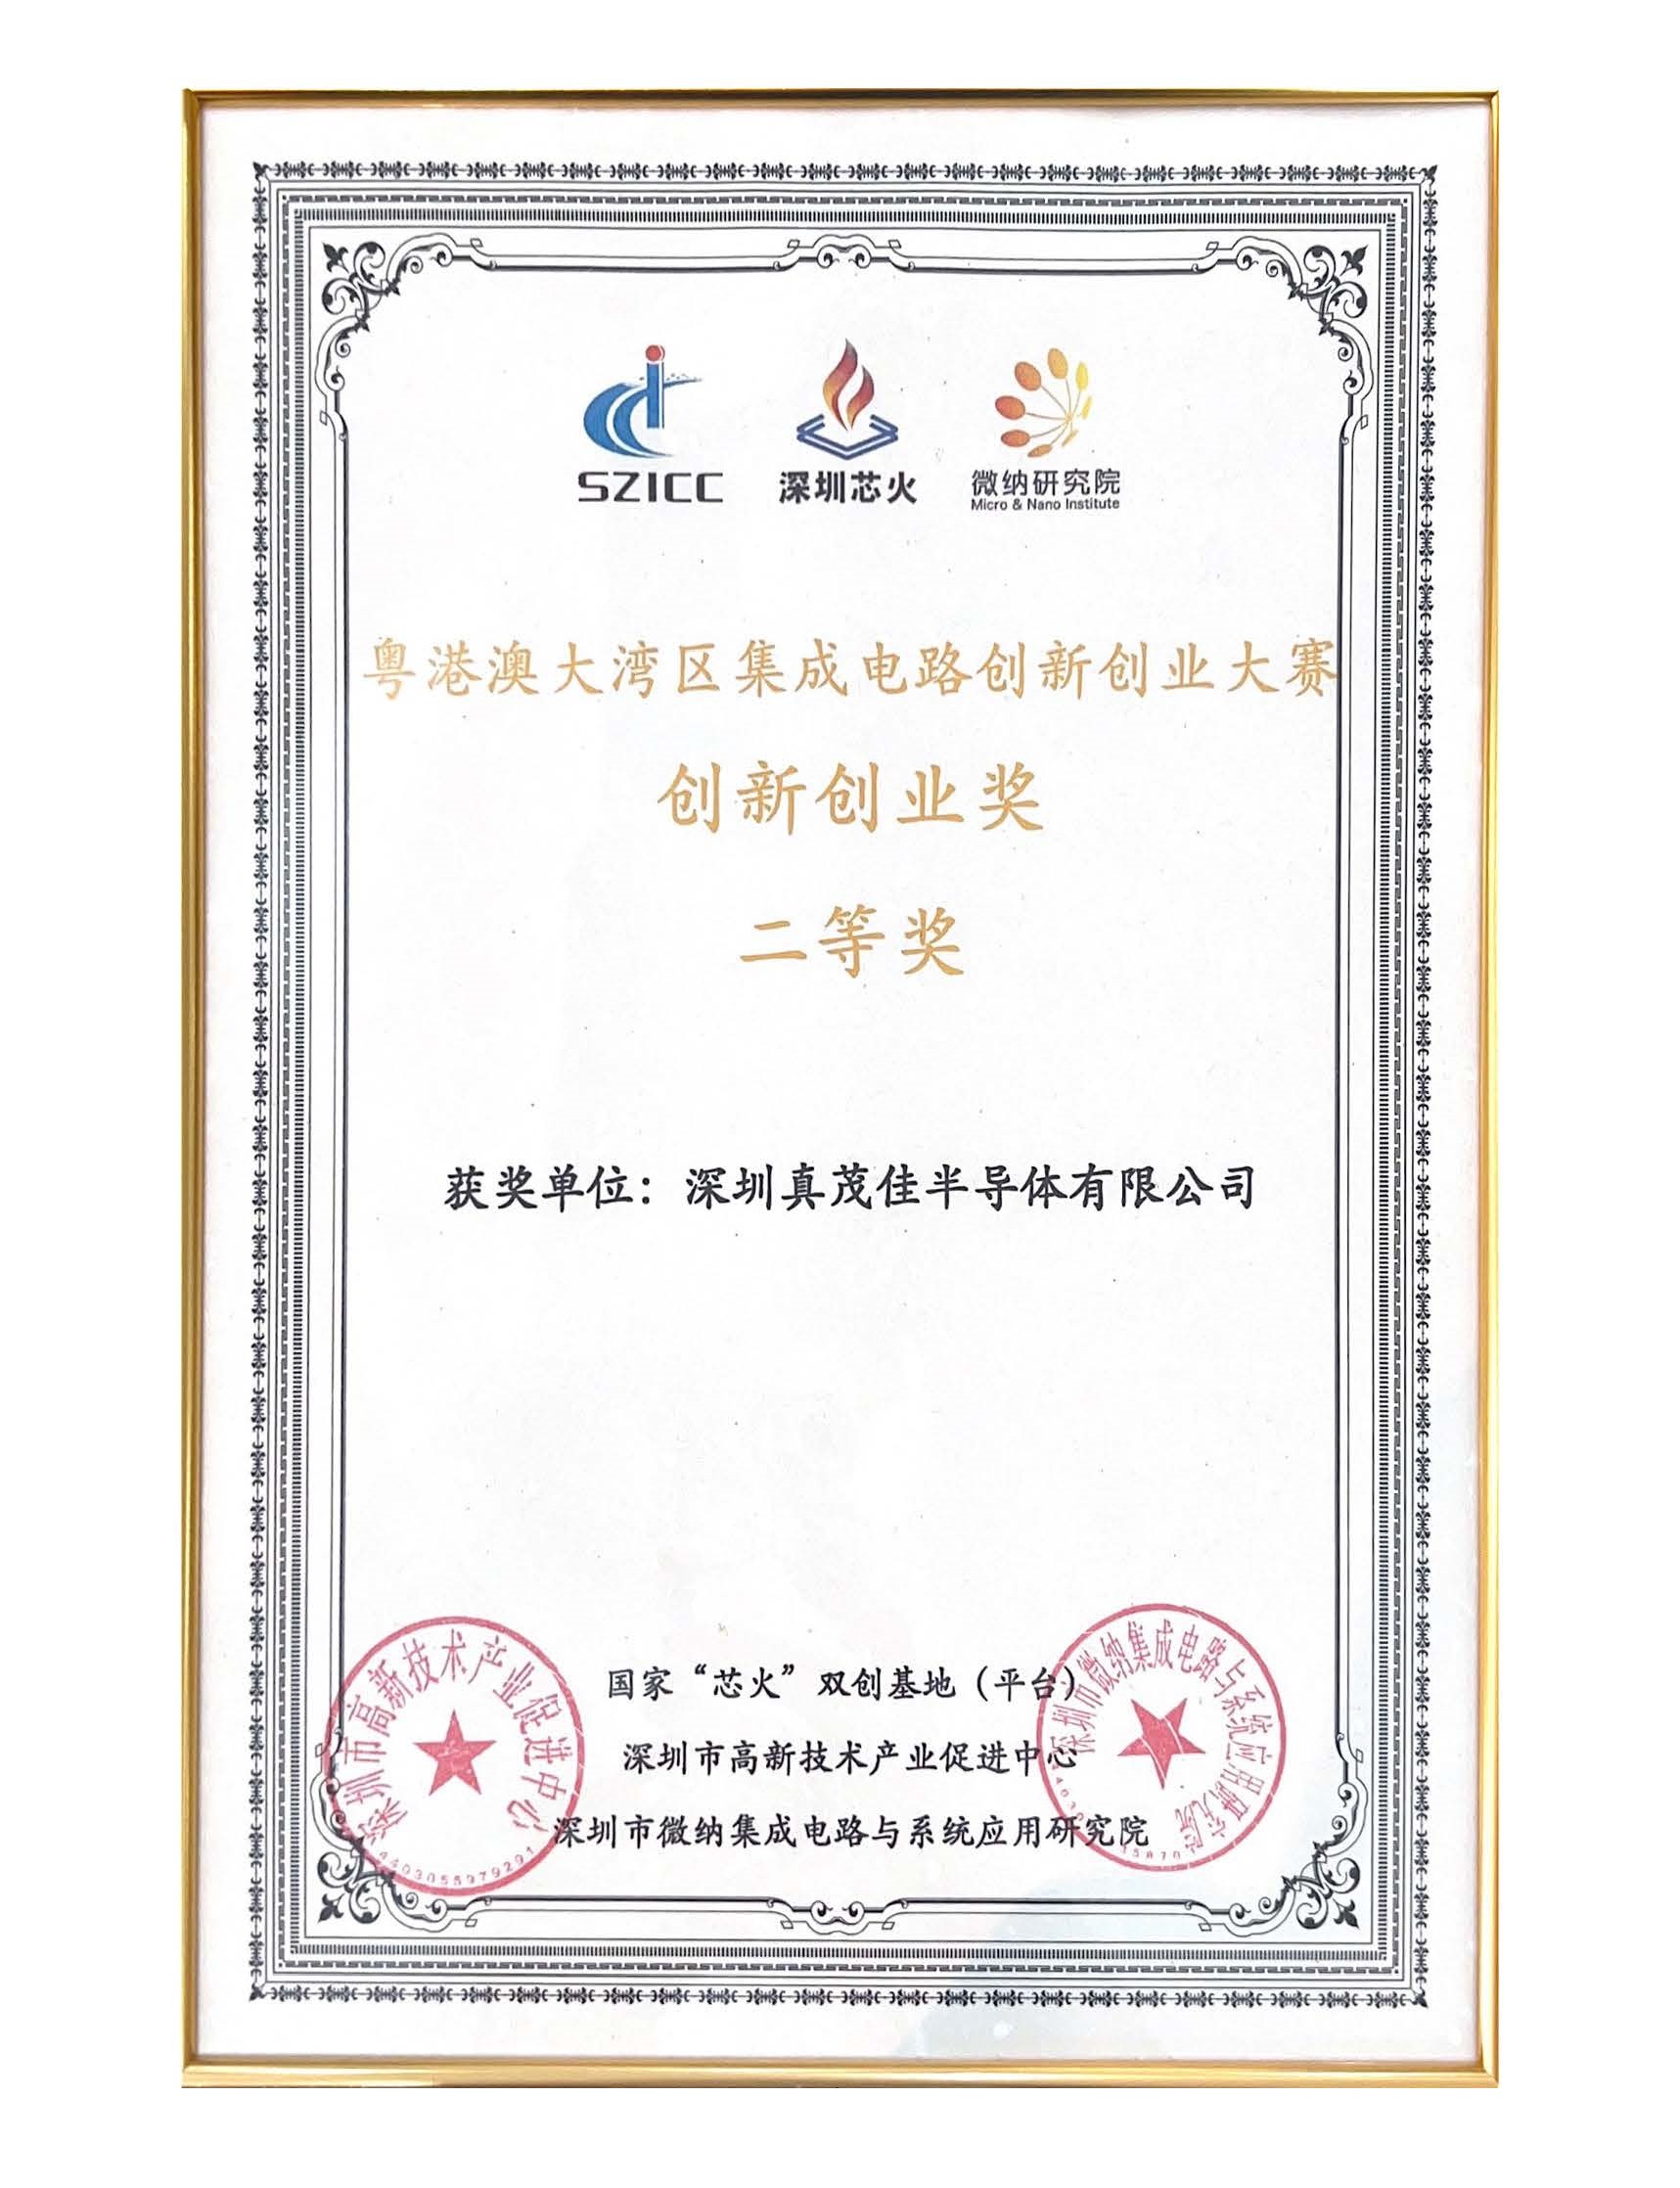 Guangdong Hong Kong Macao Greater Bay Area Integrated Circuit Innovation and Entrepreneurship Competition Innovation and Entrepreneurship Award